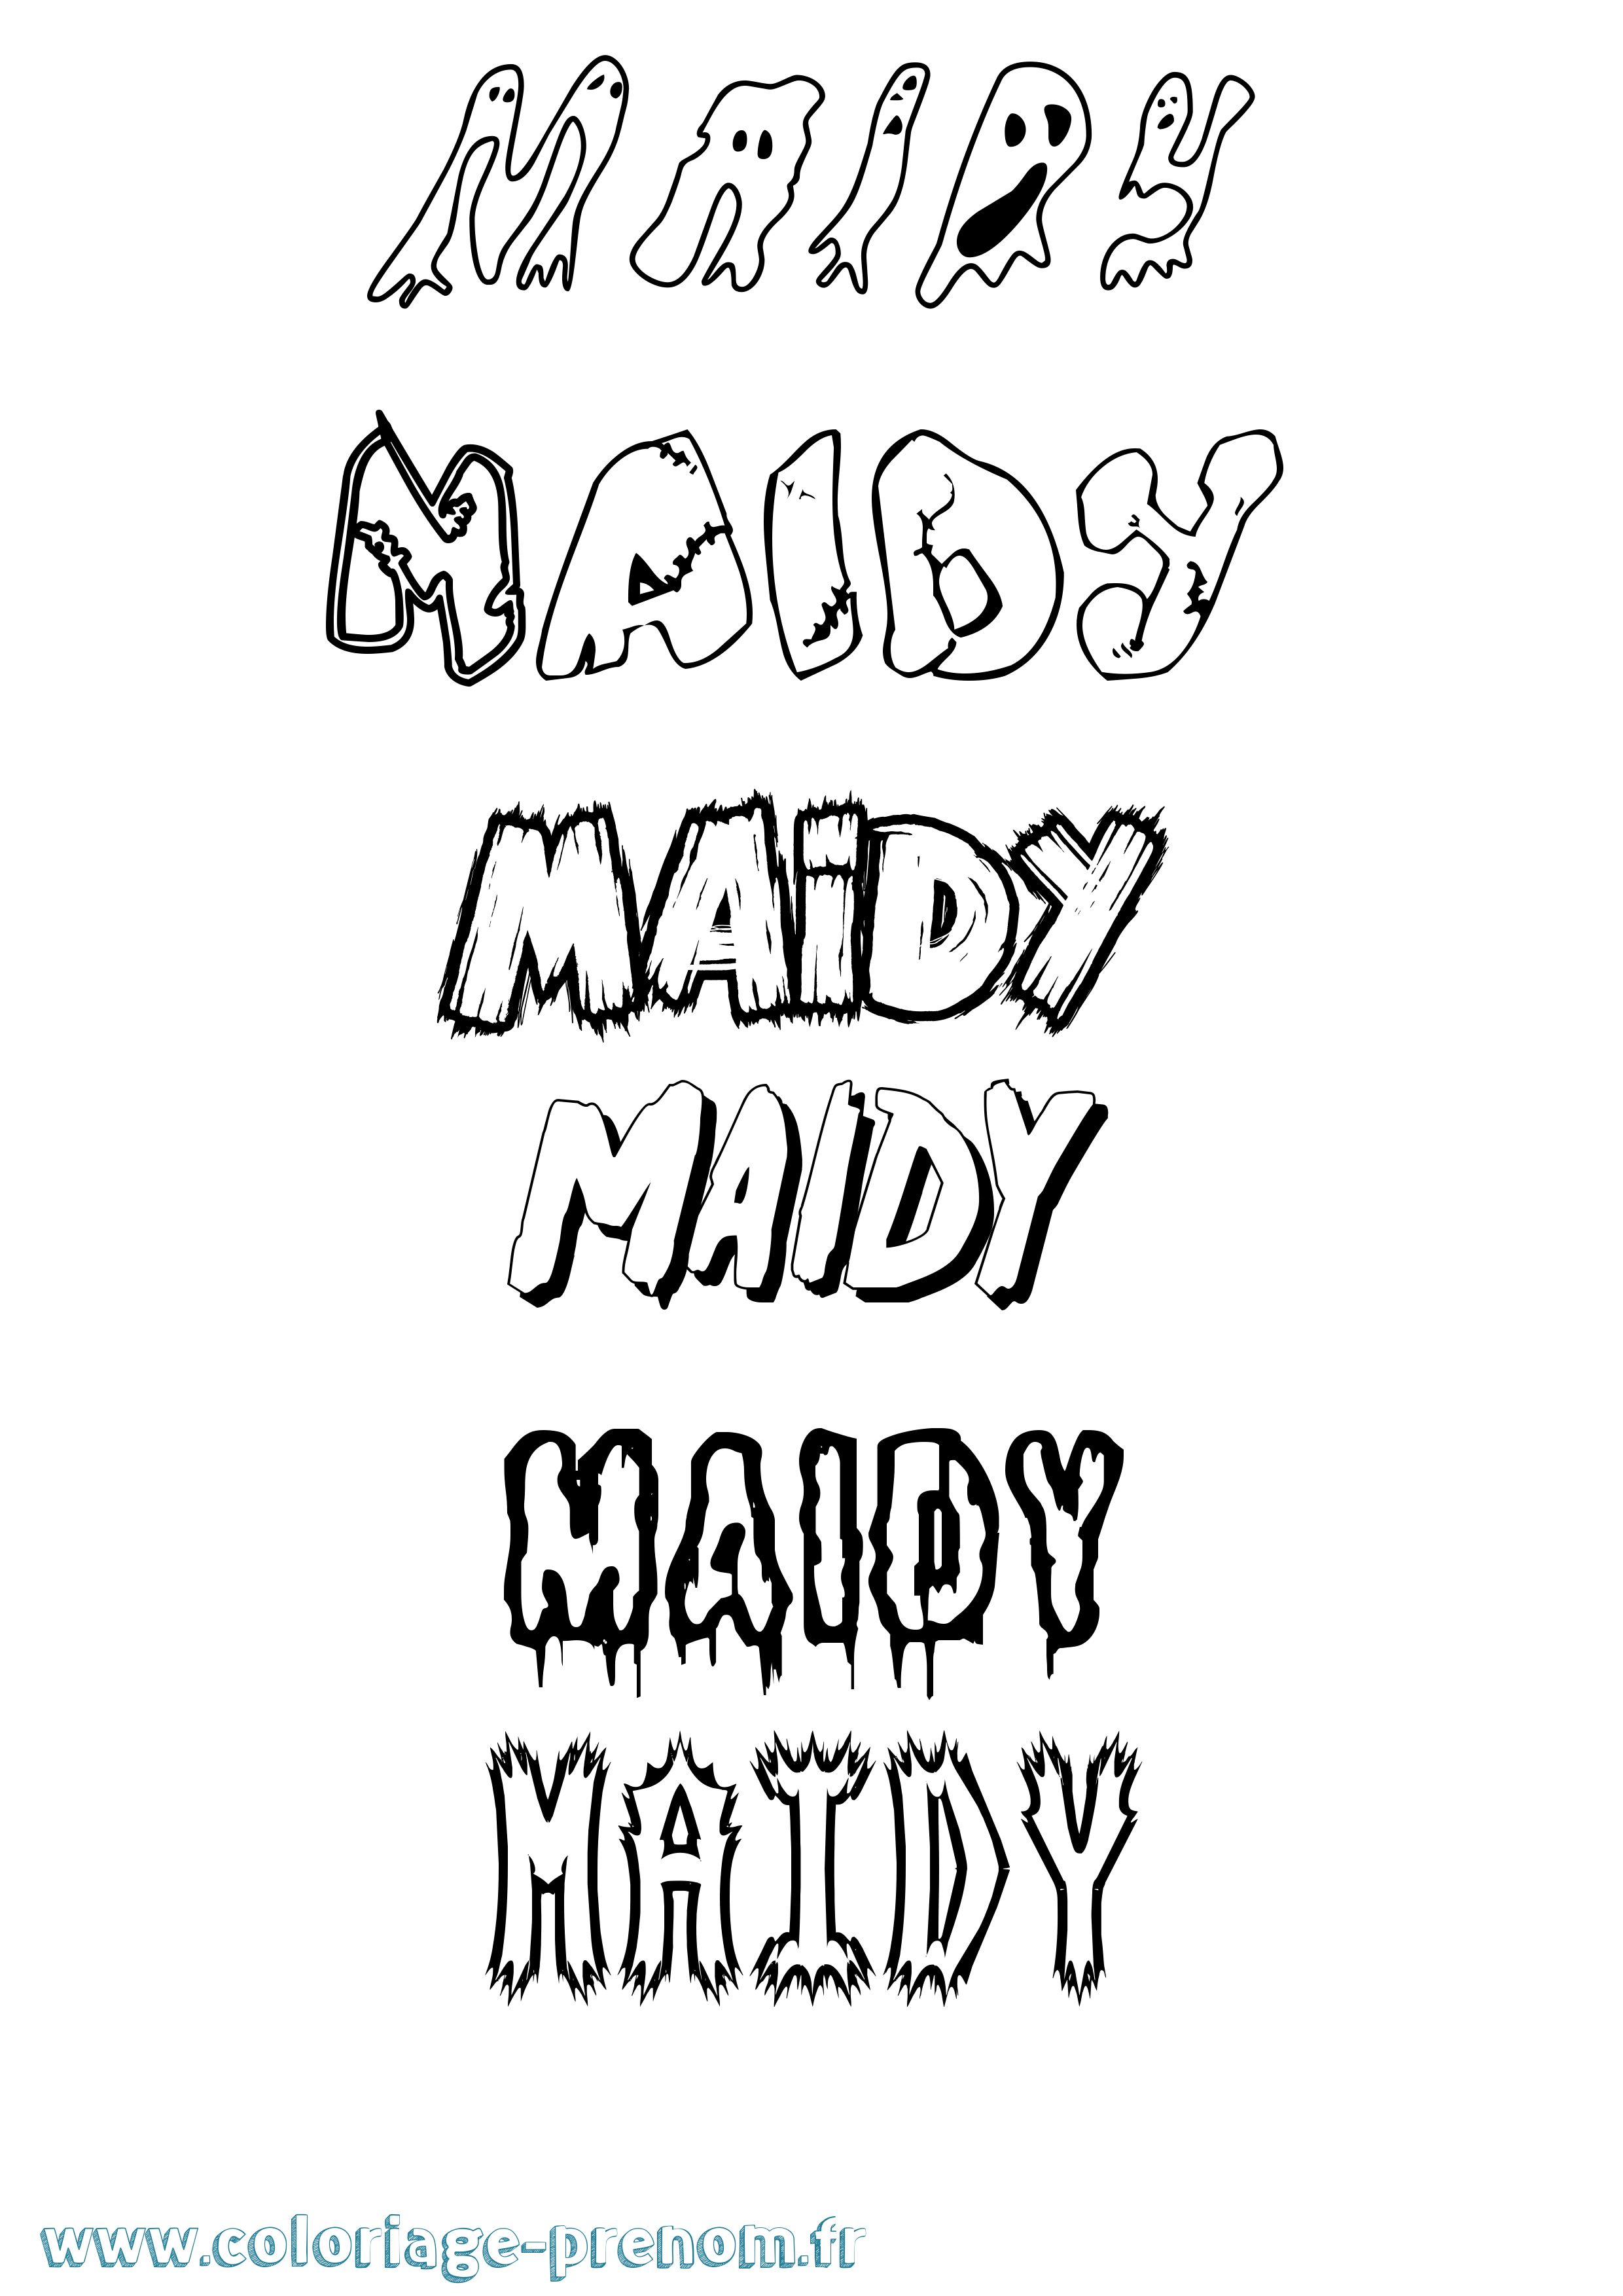 Coloriage prénom Maidy Frisson